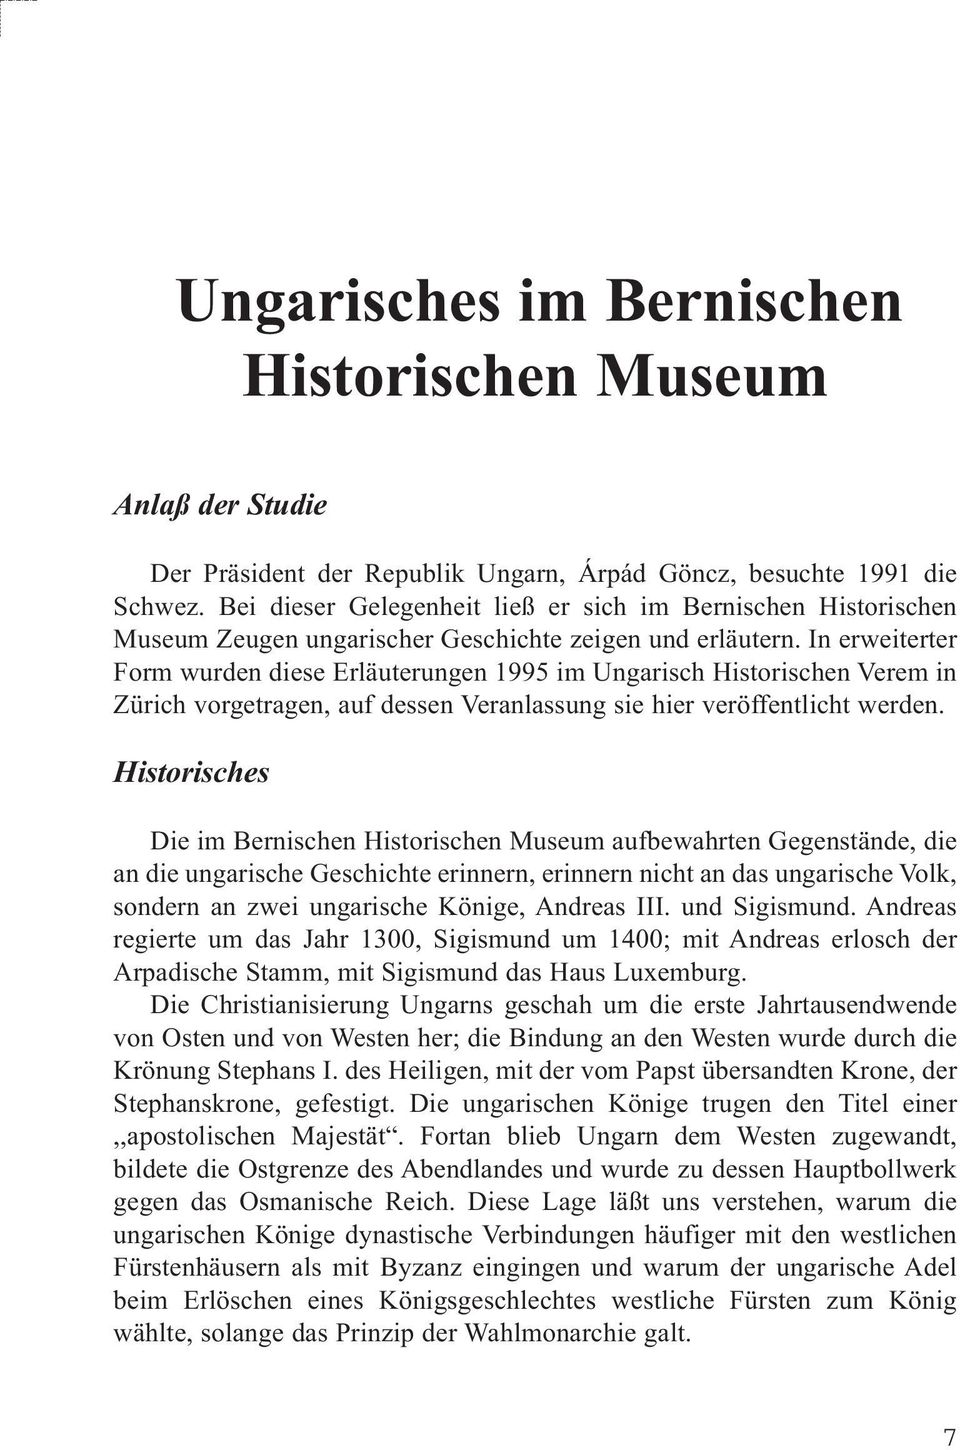 In erweiterter Form wurden diese Erläuterungen 1995 im Ungarisch Historischen Verem in Zürich vorgetragen, auf dessen Veranlassung sie hier veröffentlicht werden.